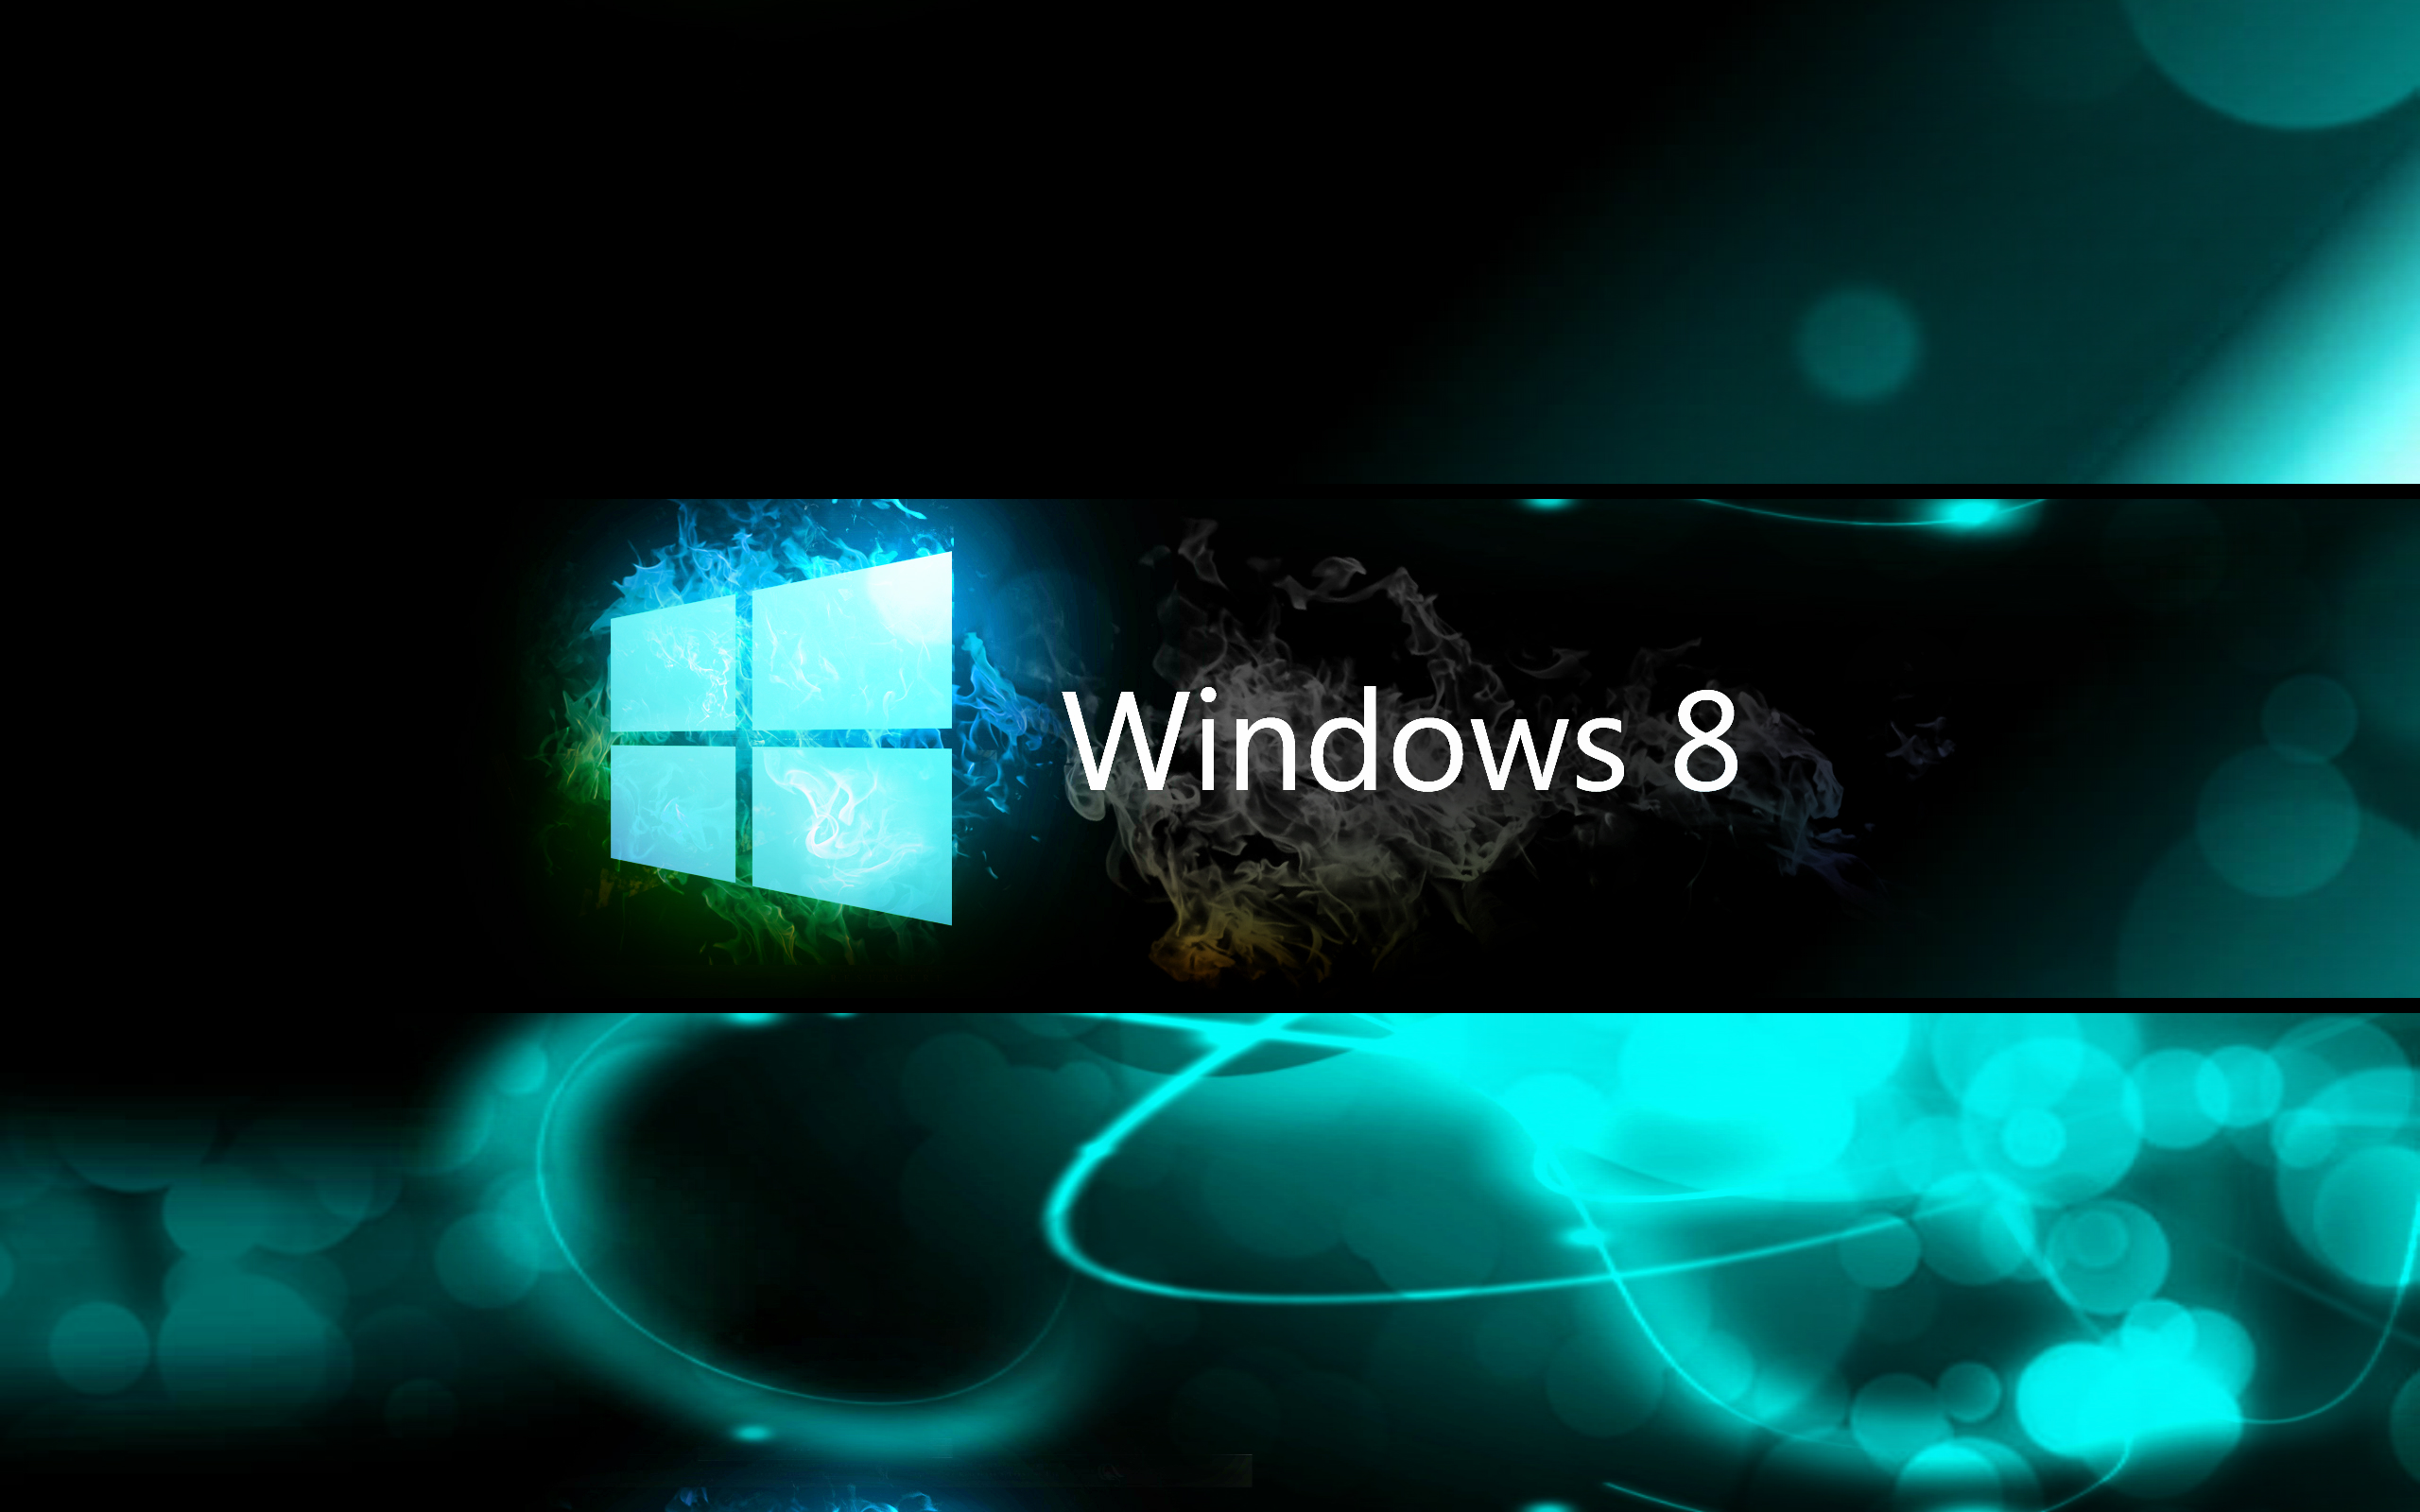 windows 8 photos windows 8 photos windows 8 photos windows 2560x1600